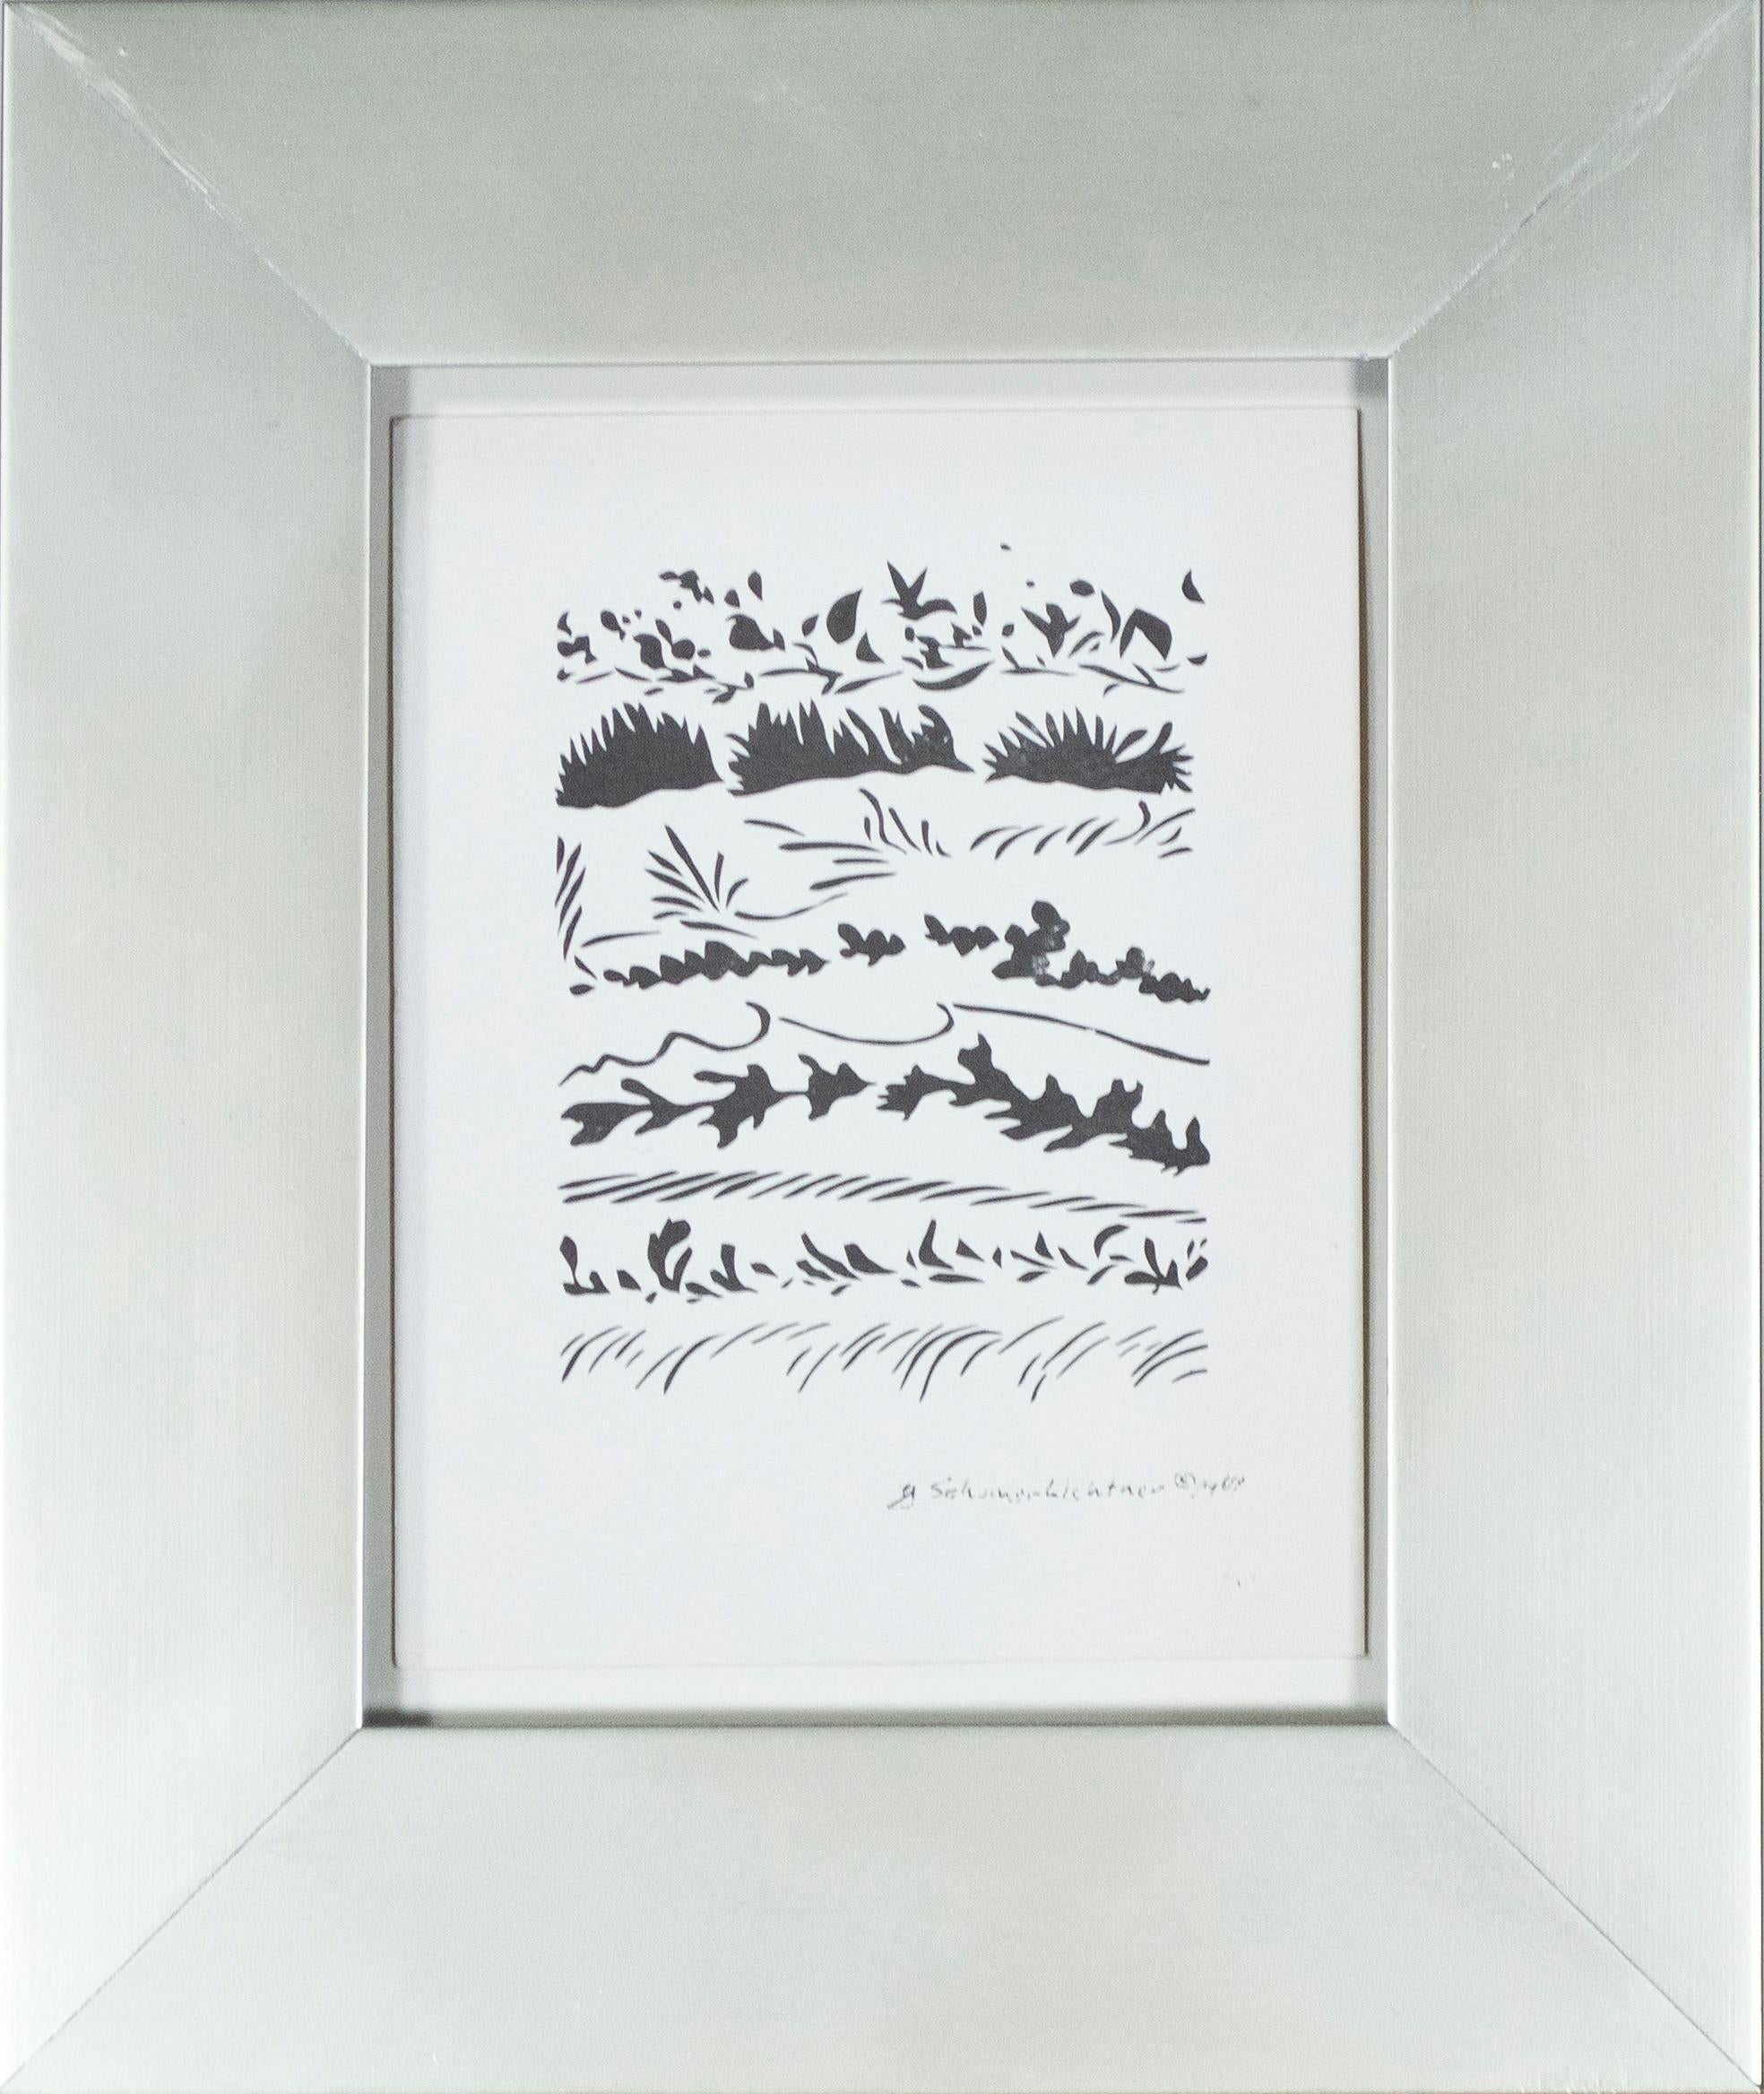 silhouettes d'hiver", une petite et délicate gravure, est une lithographie offset originale de l'artiste de Milwaukee, Schomer Lichtner. La composition présente des registres de feuillage, émergeant du blanc du papier comme s'ils sortaient du sol